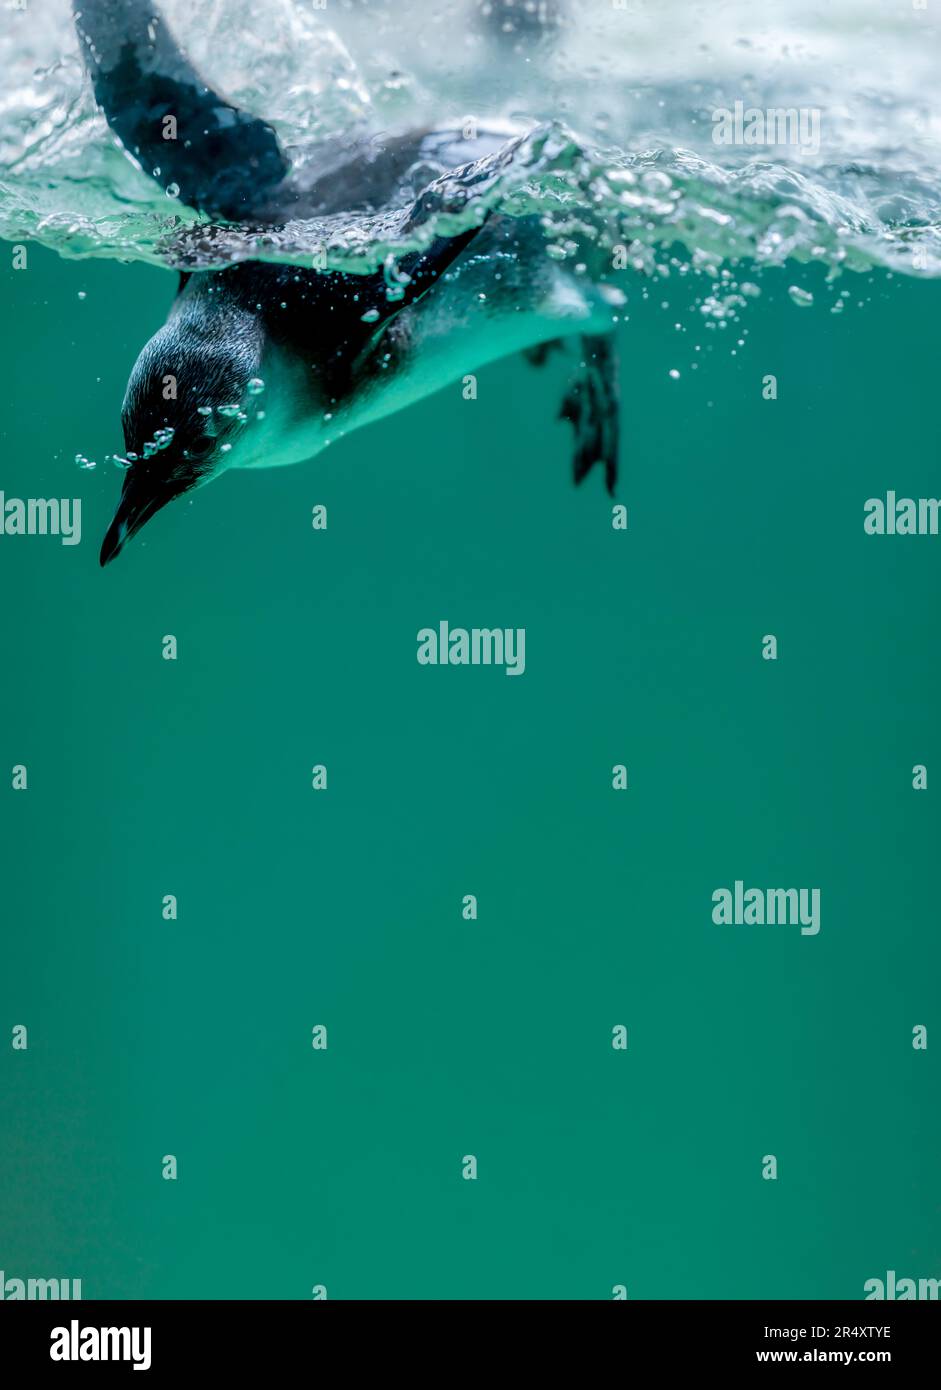 Pinguin schwimmt im Wasser mit Blasen. Afrikanischer Pinguin. Spheniscus demersus. Kap-Pinguin oder südafrikanischer Pinguin. Speicherplatz kopieren. Stockfoto